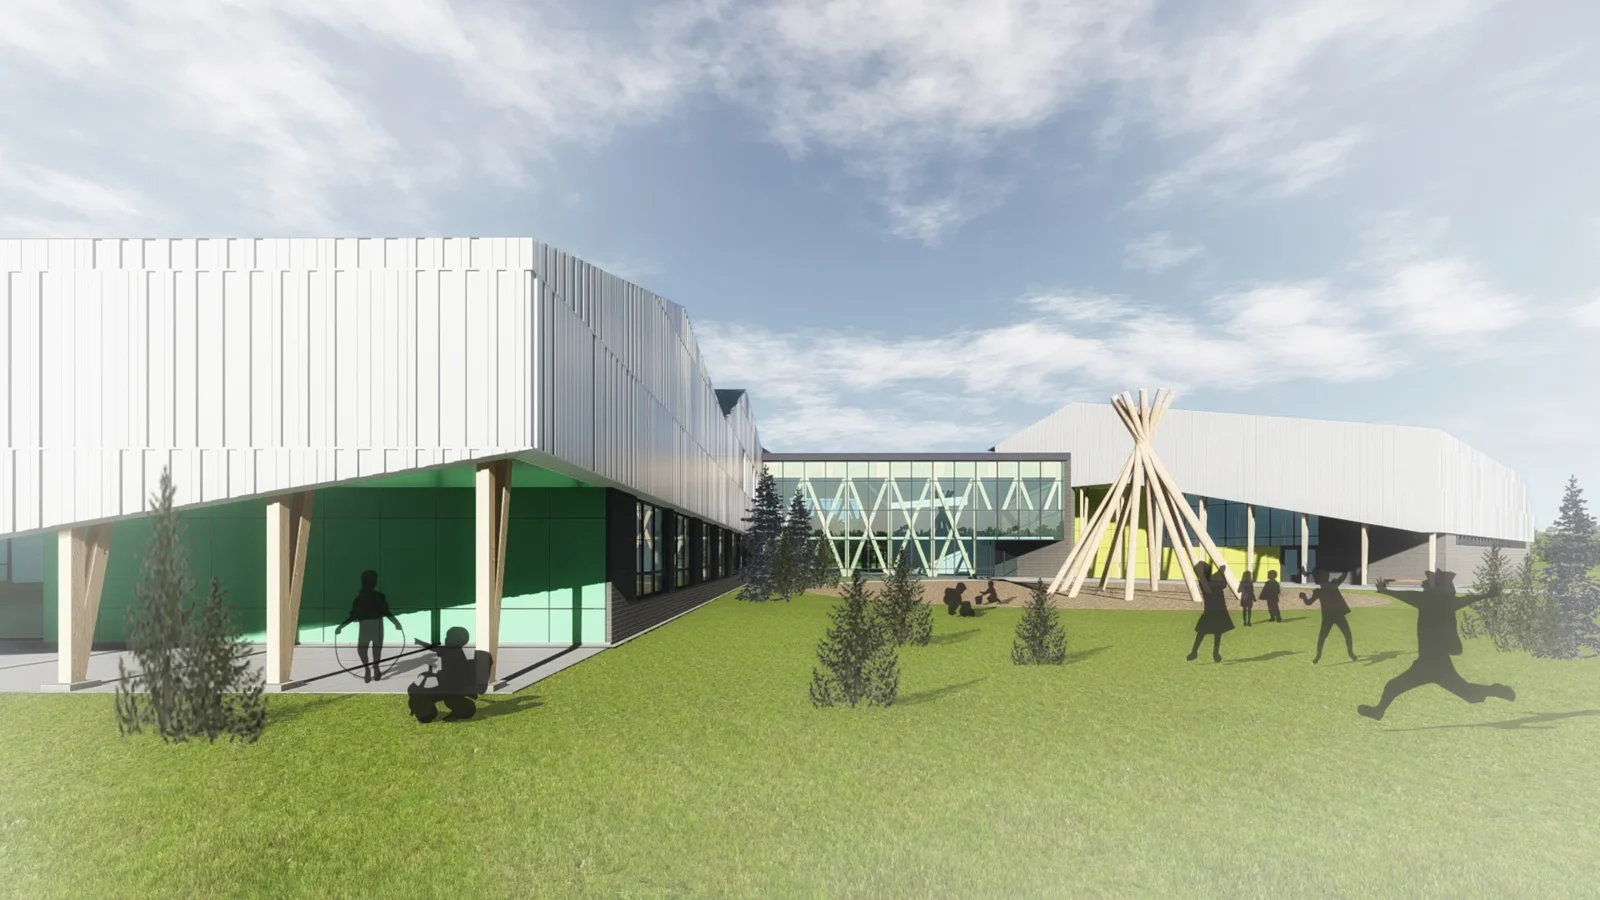 Rendu architectural 3D de l'école primaire de Chisasibi